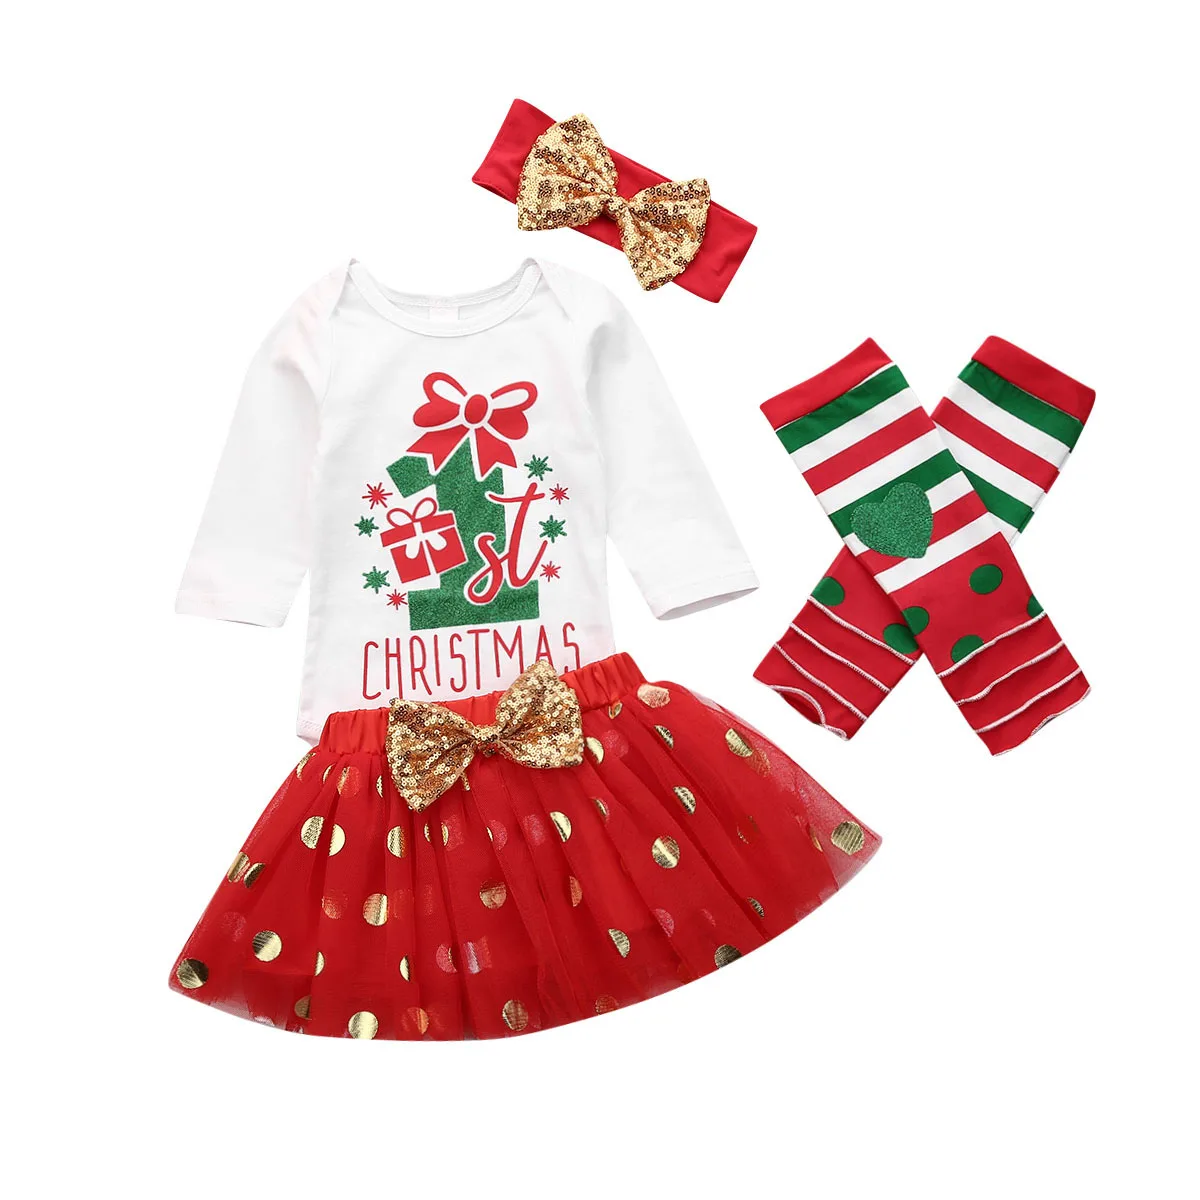 Emmaaby/3 вида стилей комплект одежды для маленьких девочек возрастом от 0 до 18 месяцев, комбинезон, топ с бантом, комплект с кружевной юбкой